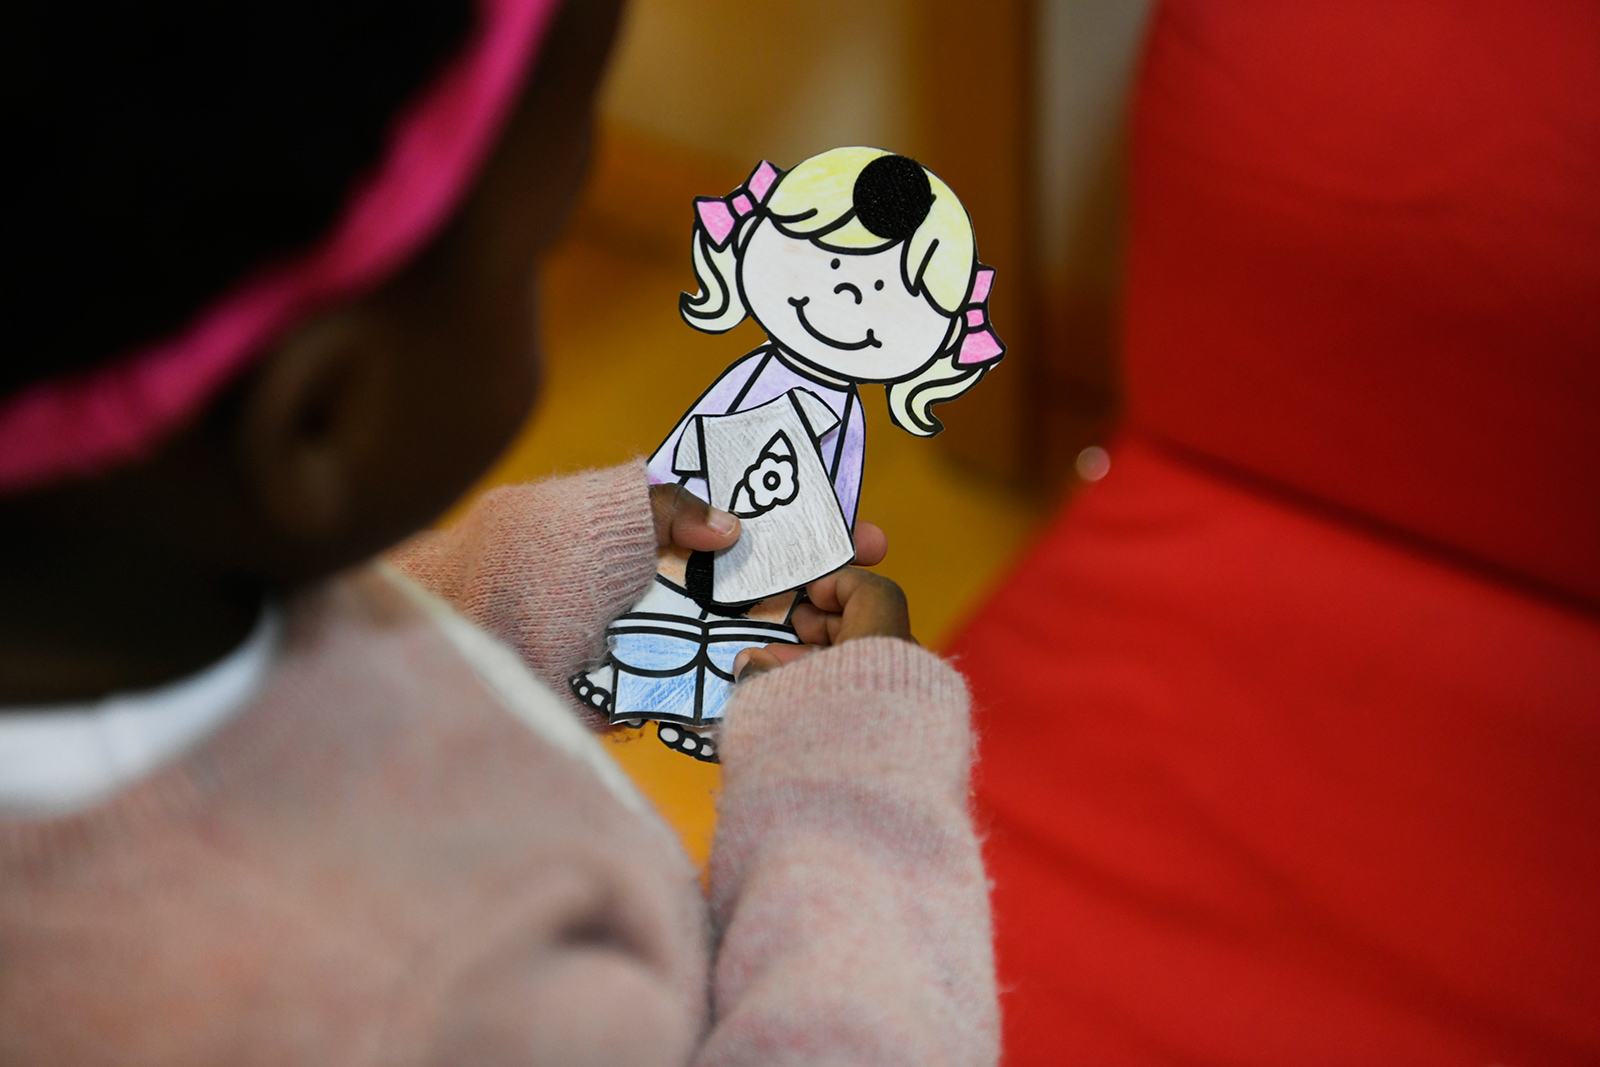 Enfant à la crèche qui tient un personnage en papier découpé